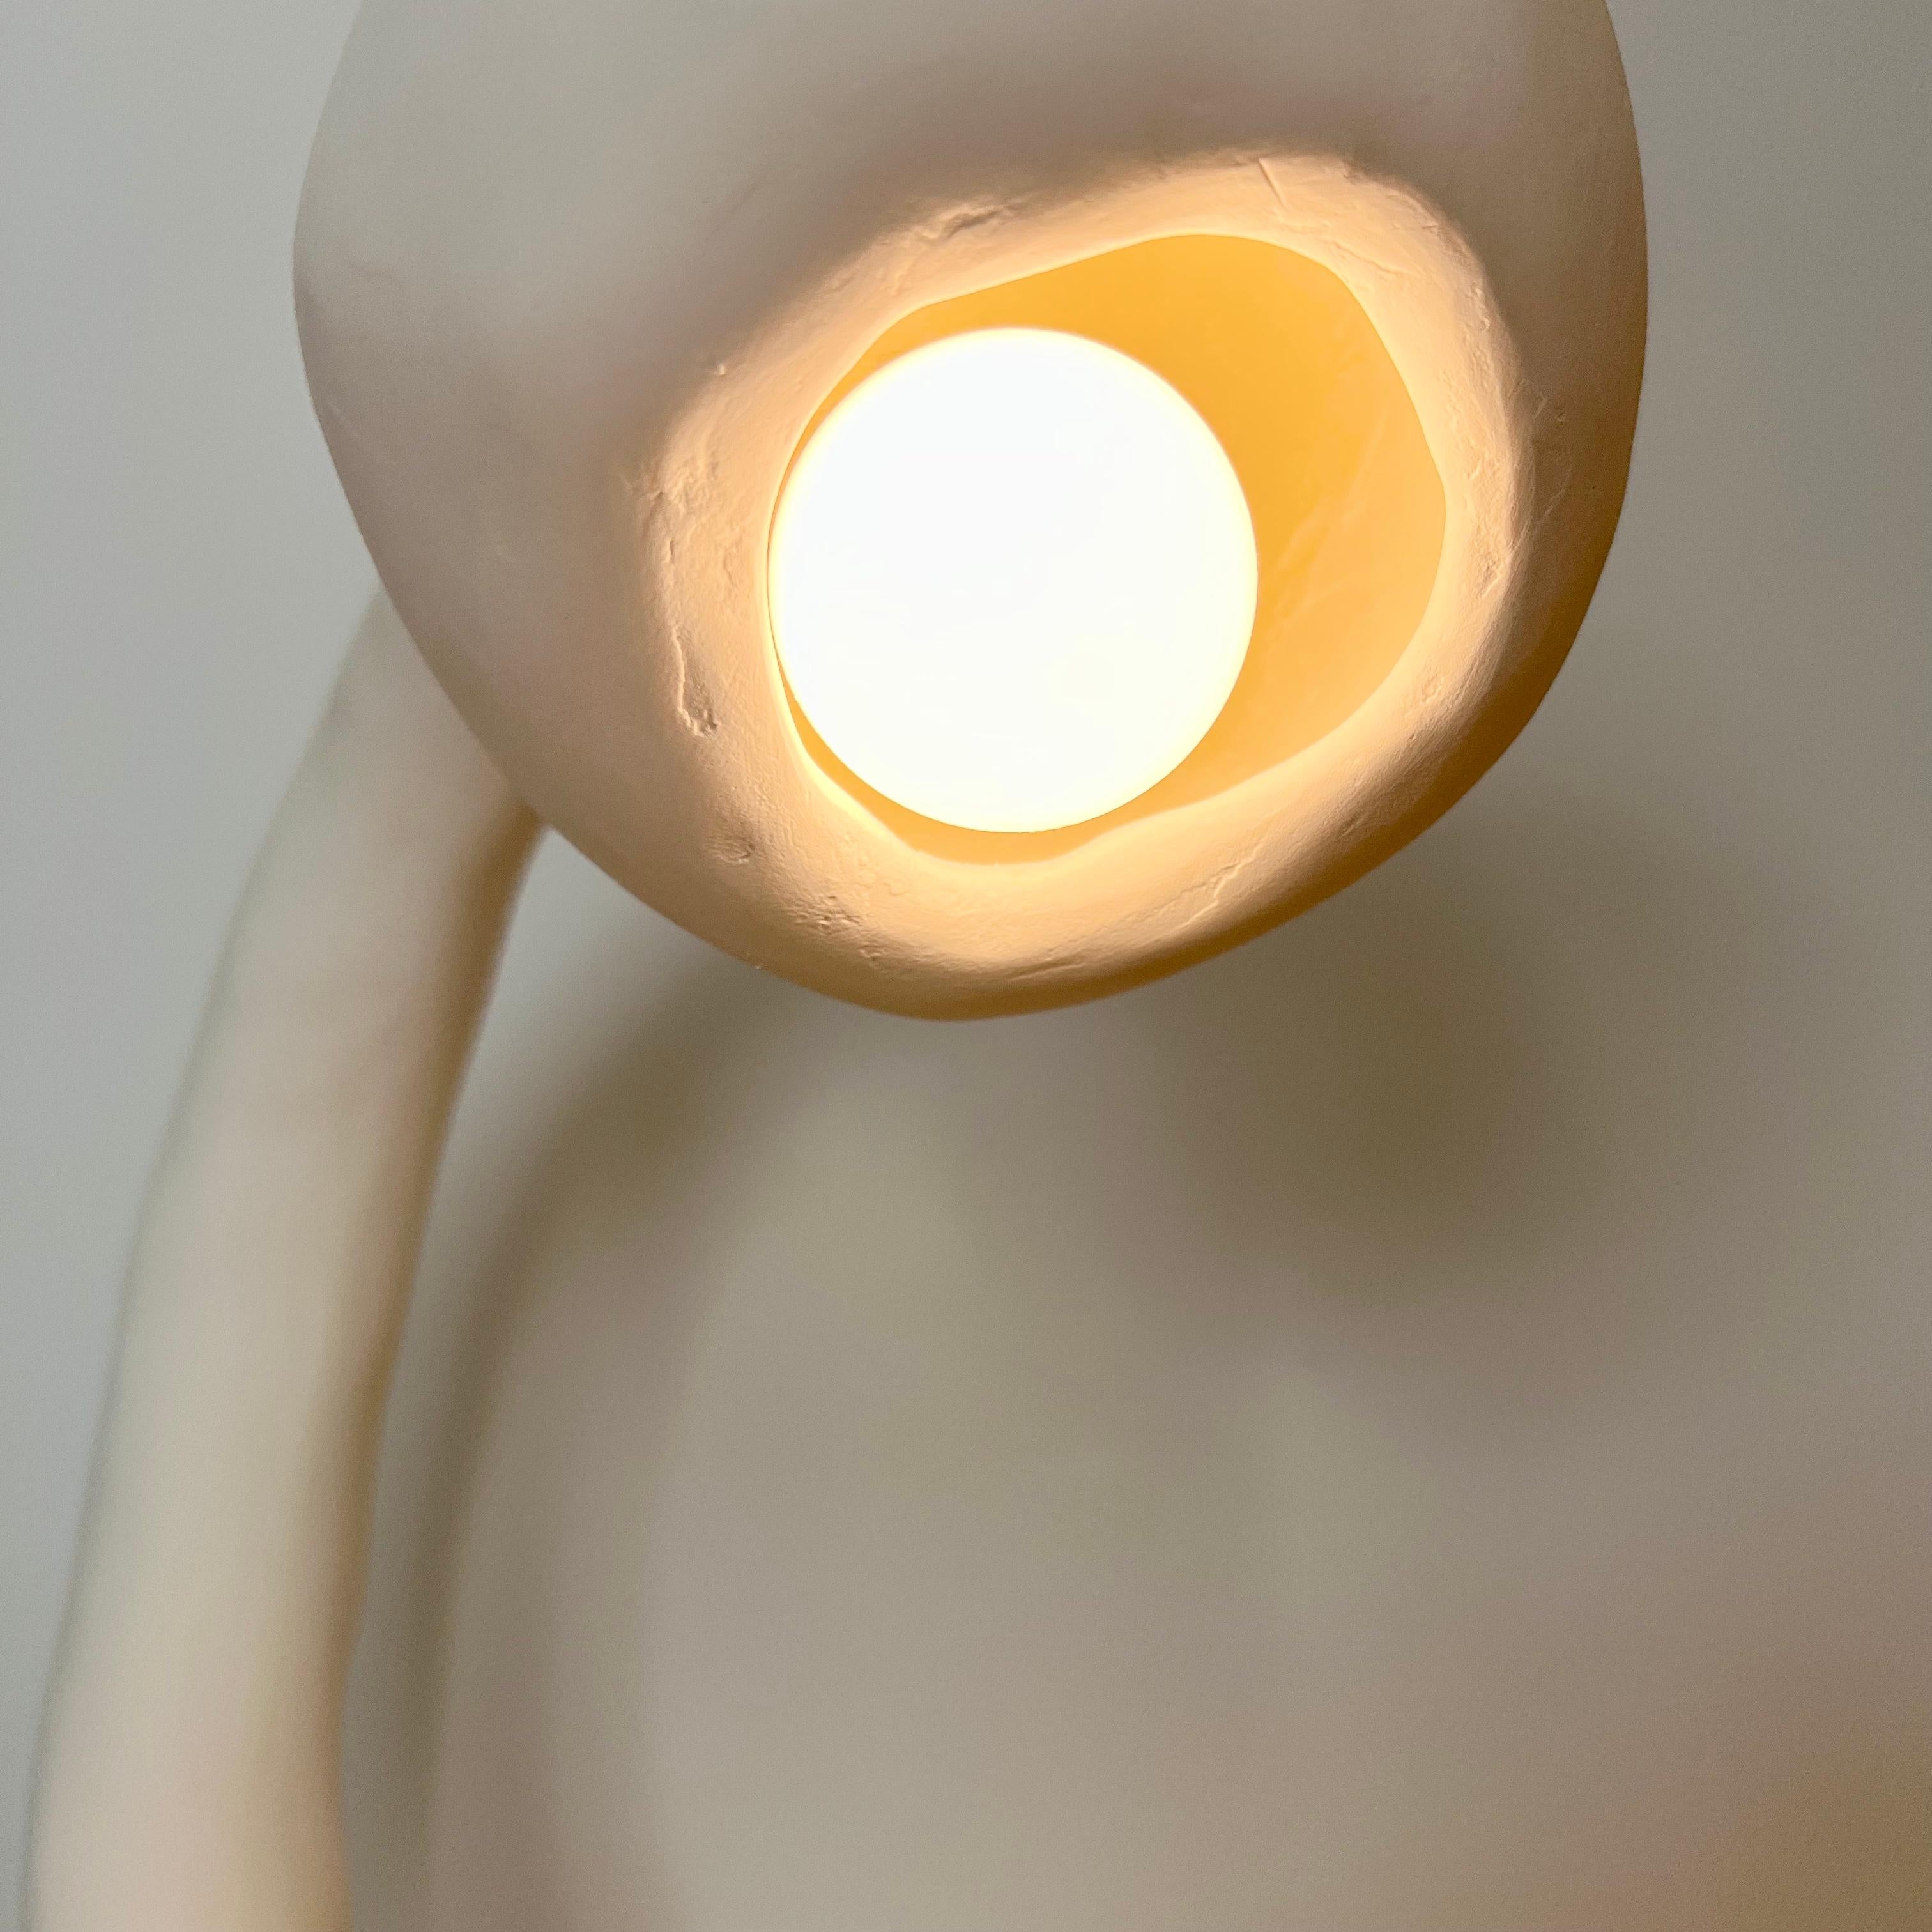 plaster line lamp